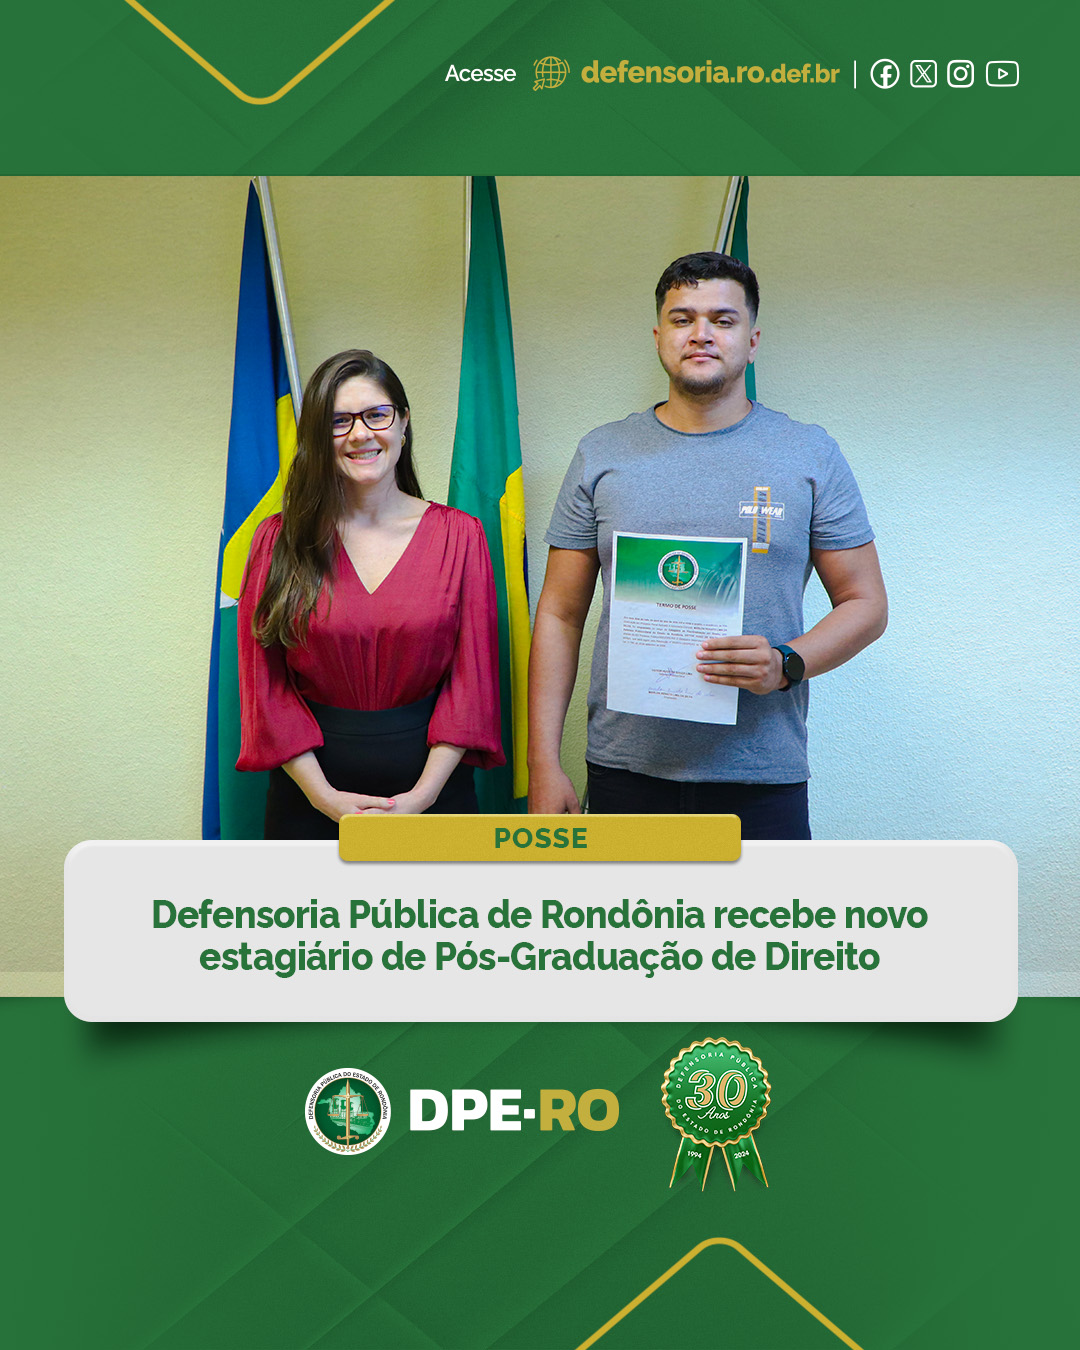 Defensoria Pública de Rondônia recebe novo estagiário de Pós-Graduação de Direito